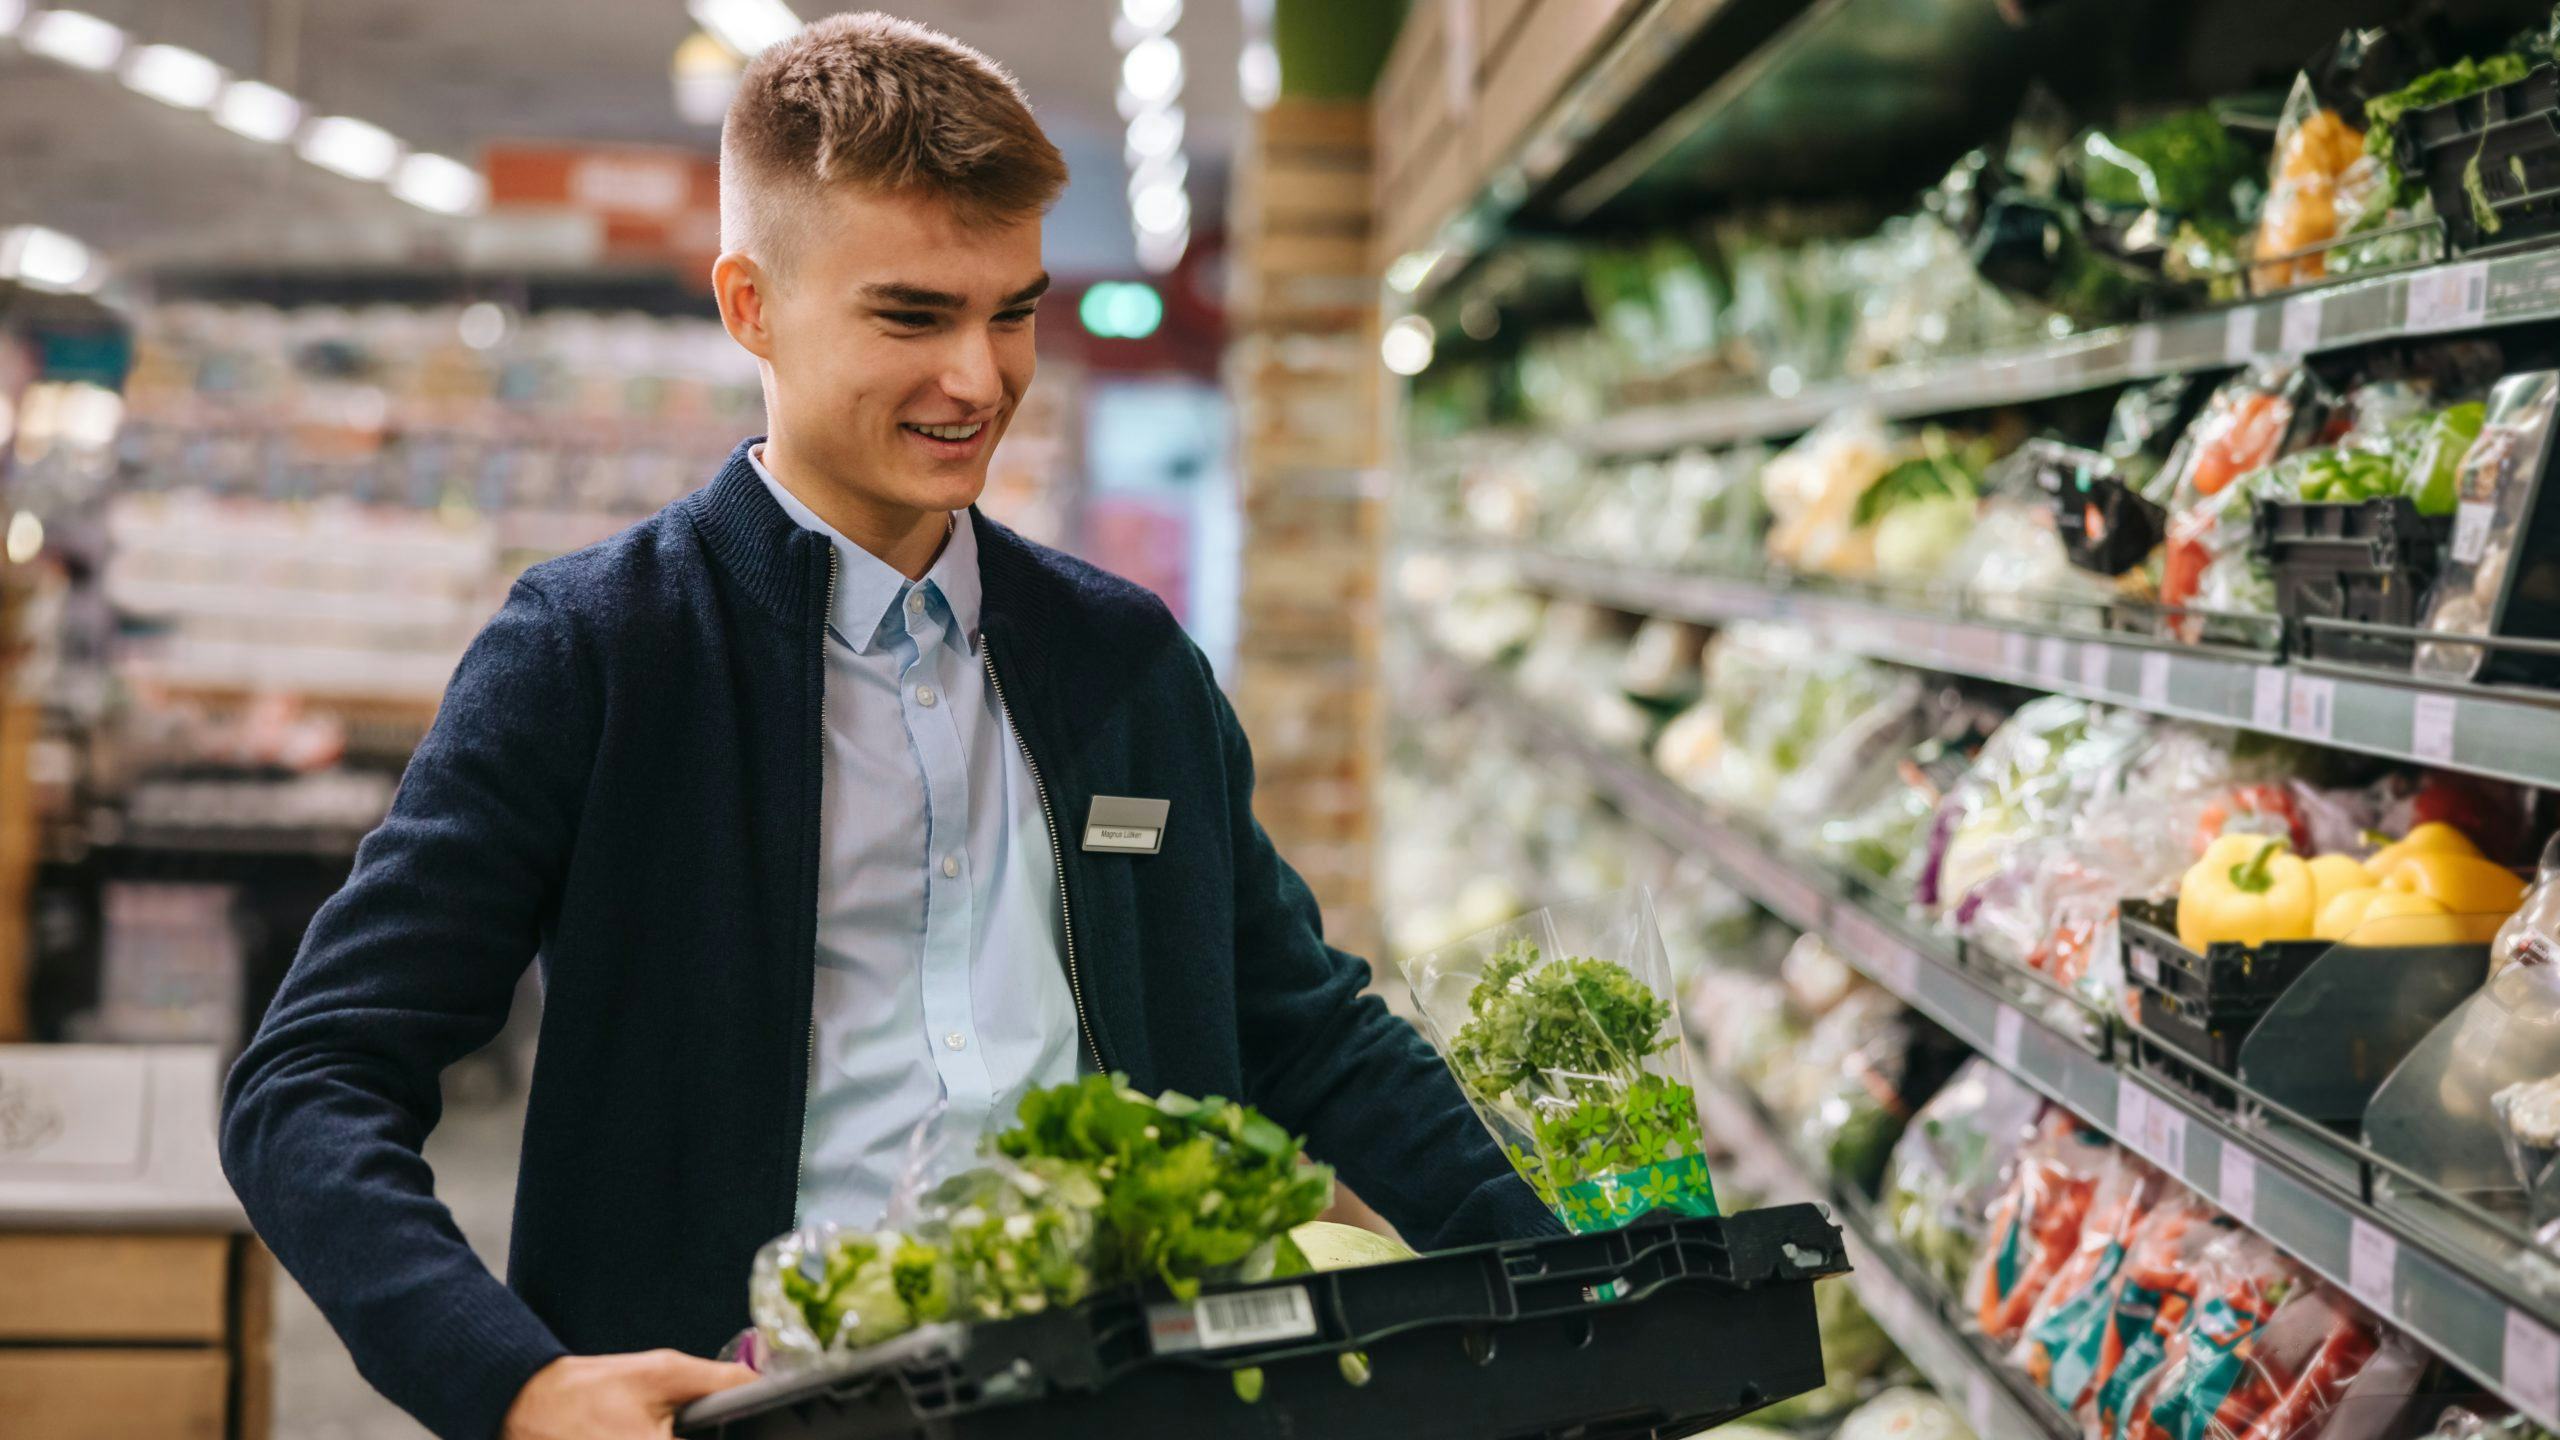 Deze supermarktmedewerker krijgt er de komende drie jaar negen procent loon bij. 